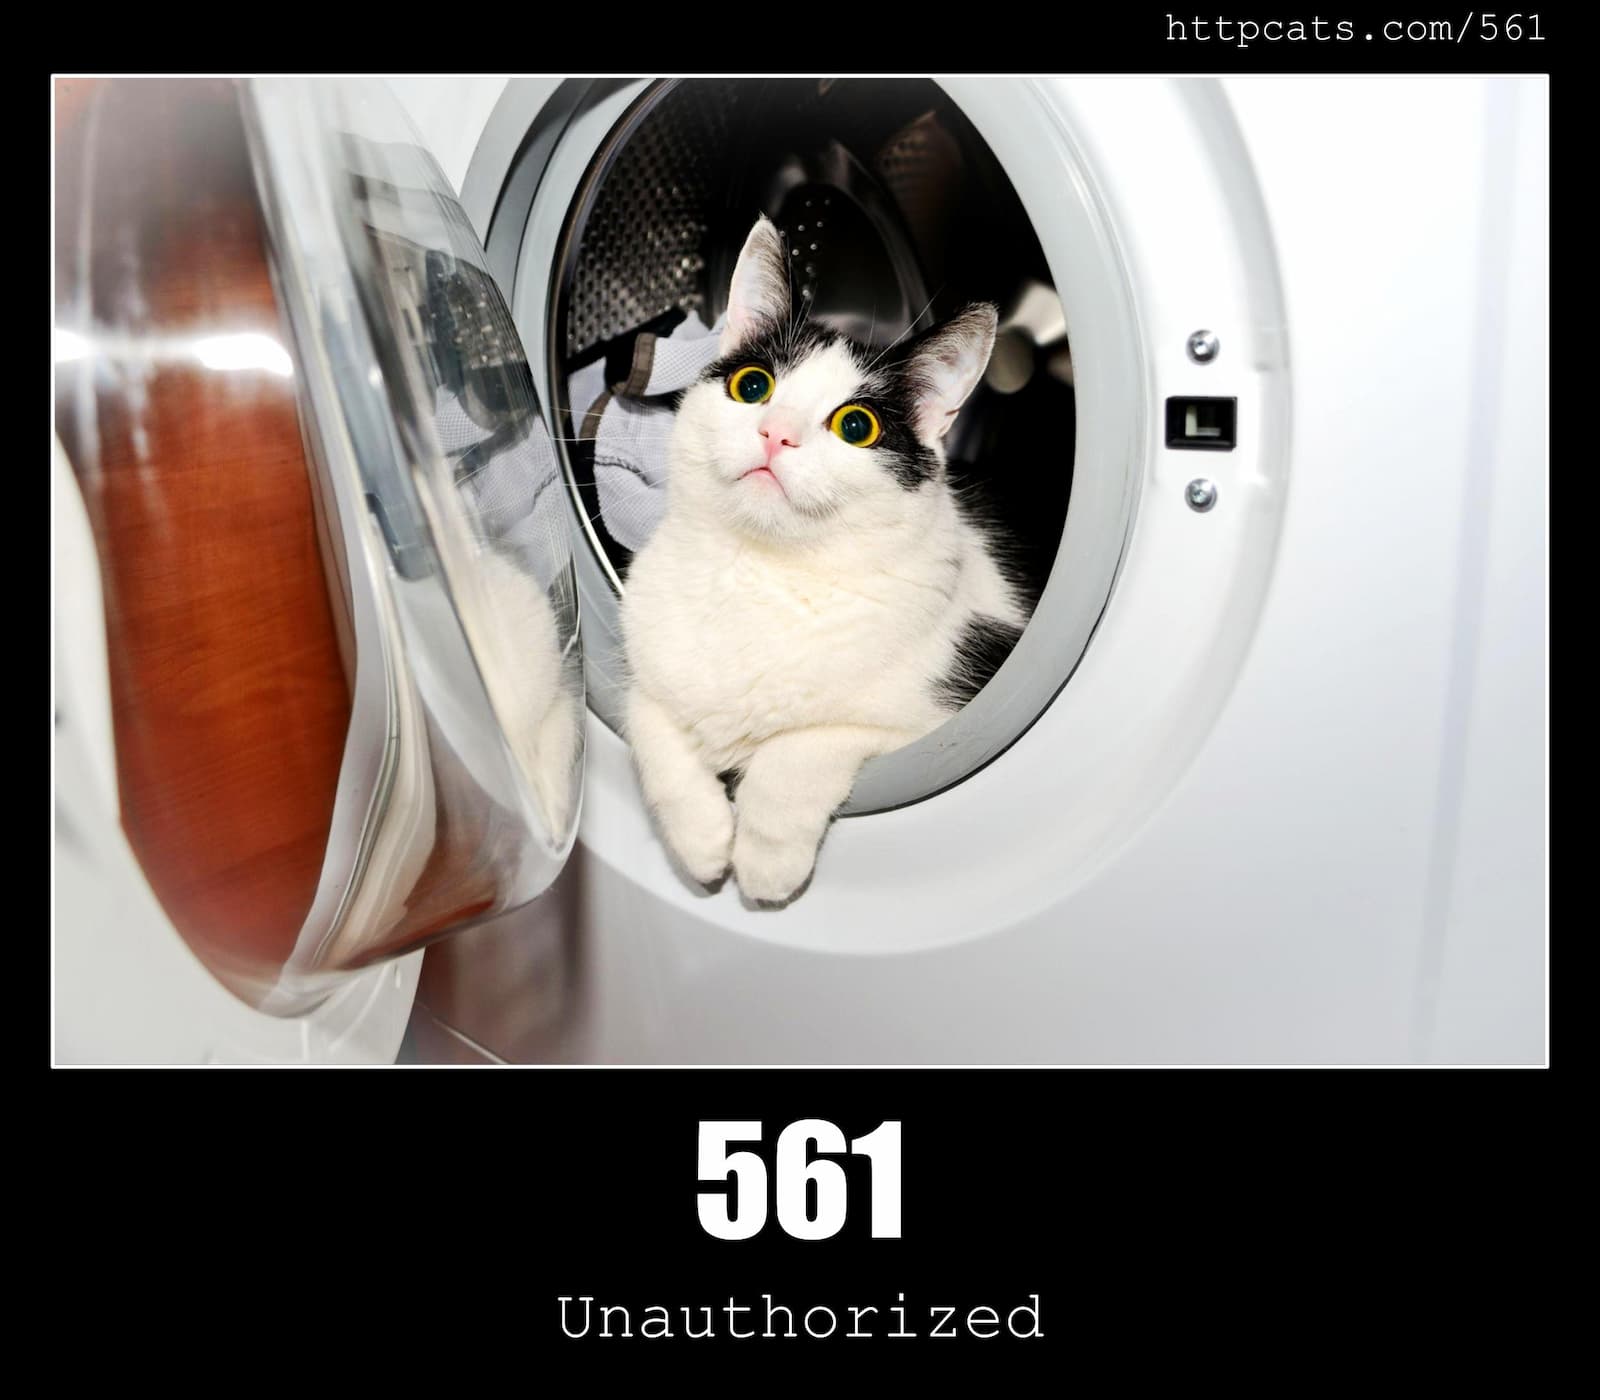 HTTP Status Code 561 Unauthorized & Cats